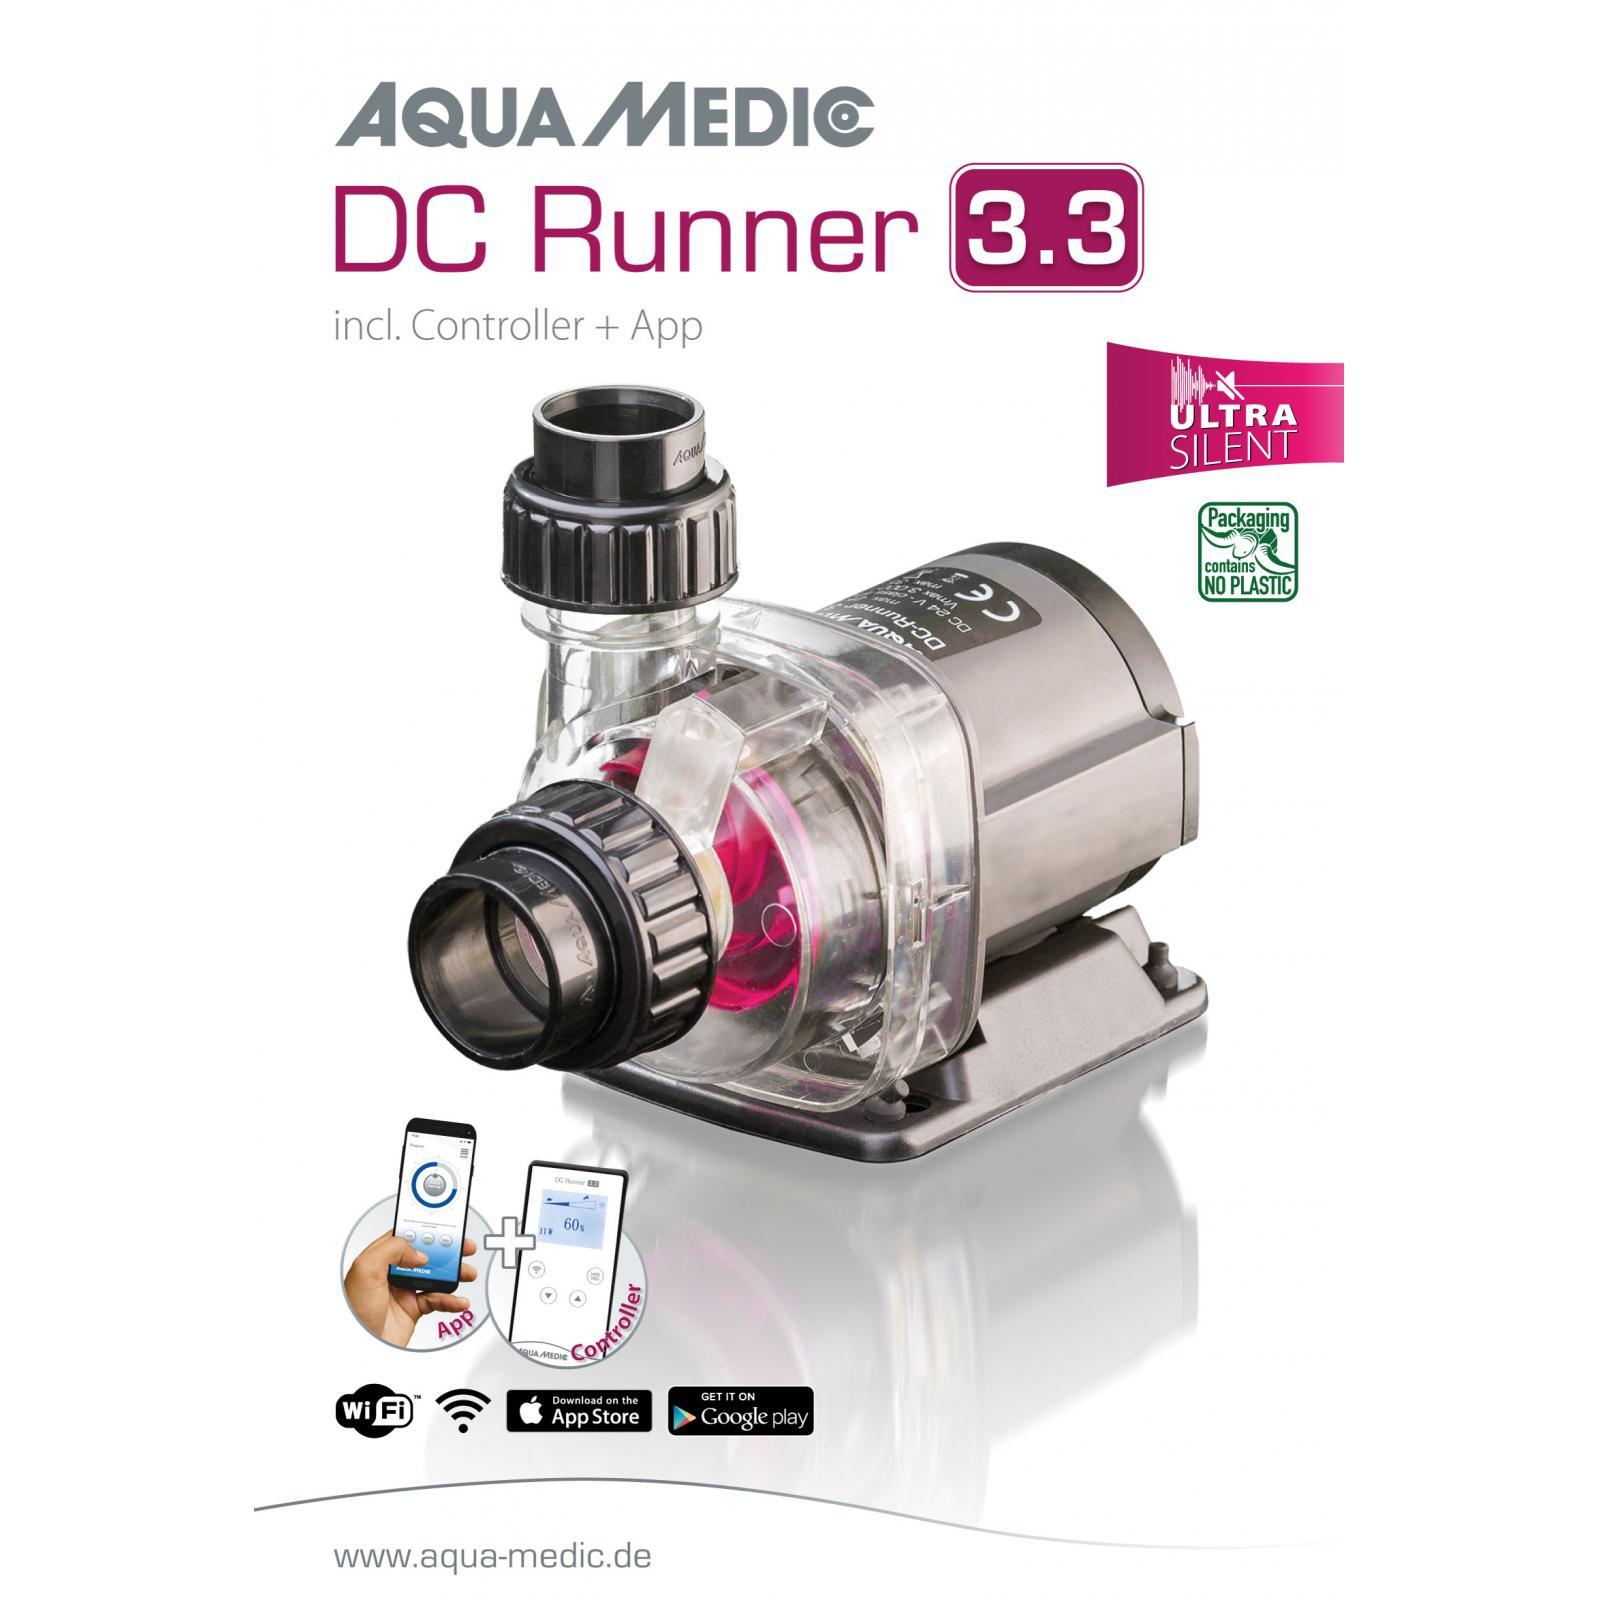 Aqua Medic DC Runner 3.3 WiFi opvoerpompen